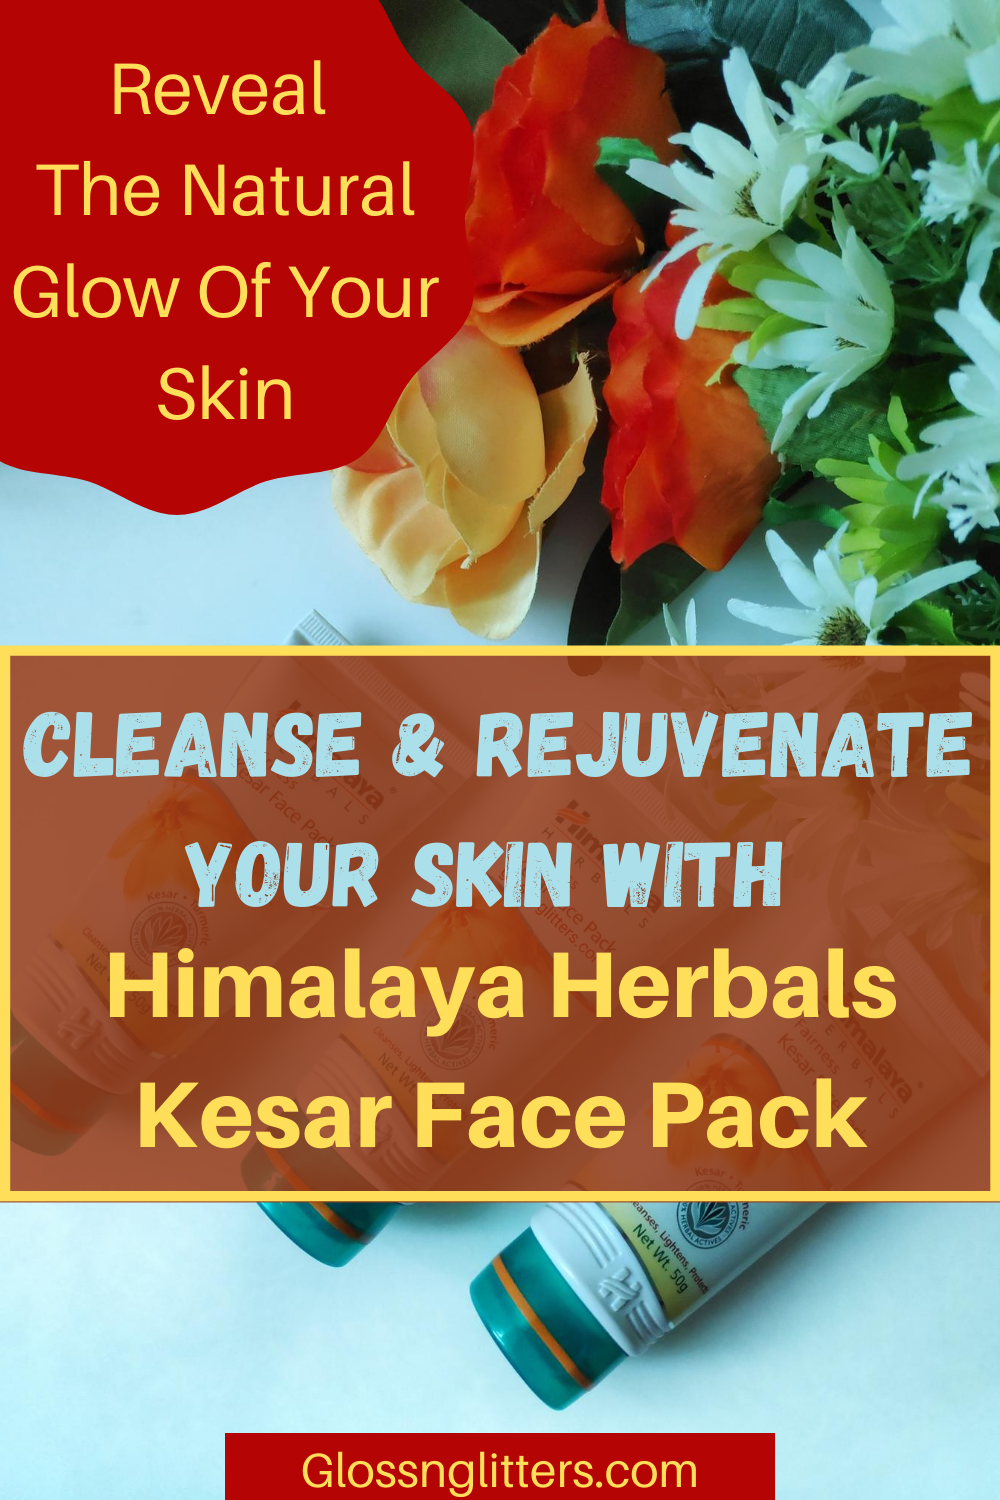 Himalaya Herbals Natural Glow Kesar Face Pack Review